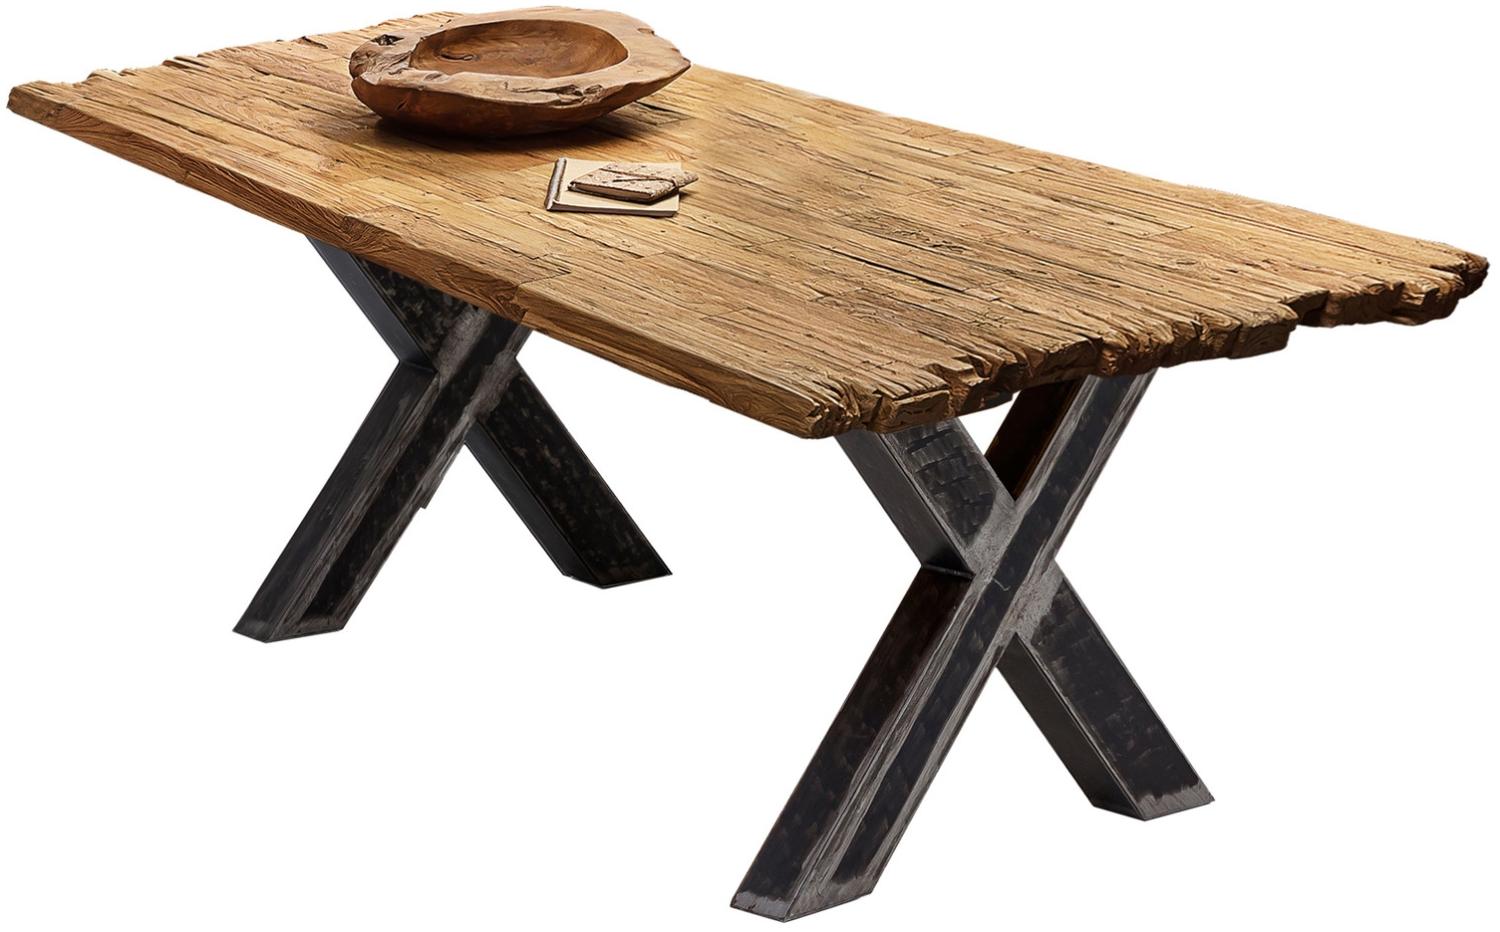 Sit Möbel Tische & Bänke Tisch 220x100 cm, Platte recyceltes Teak natur, Gestell Metall used look, klar lackiert Bild 1